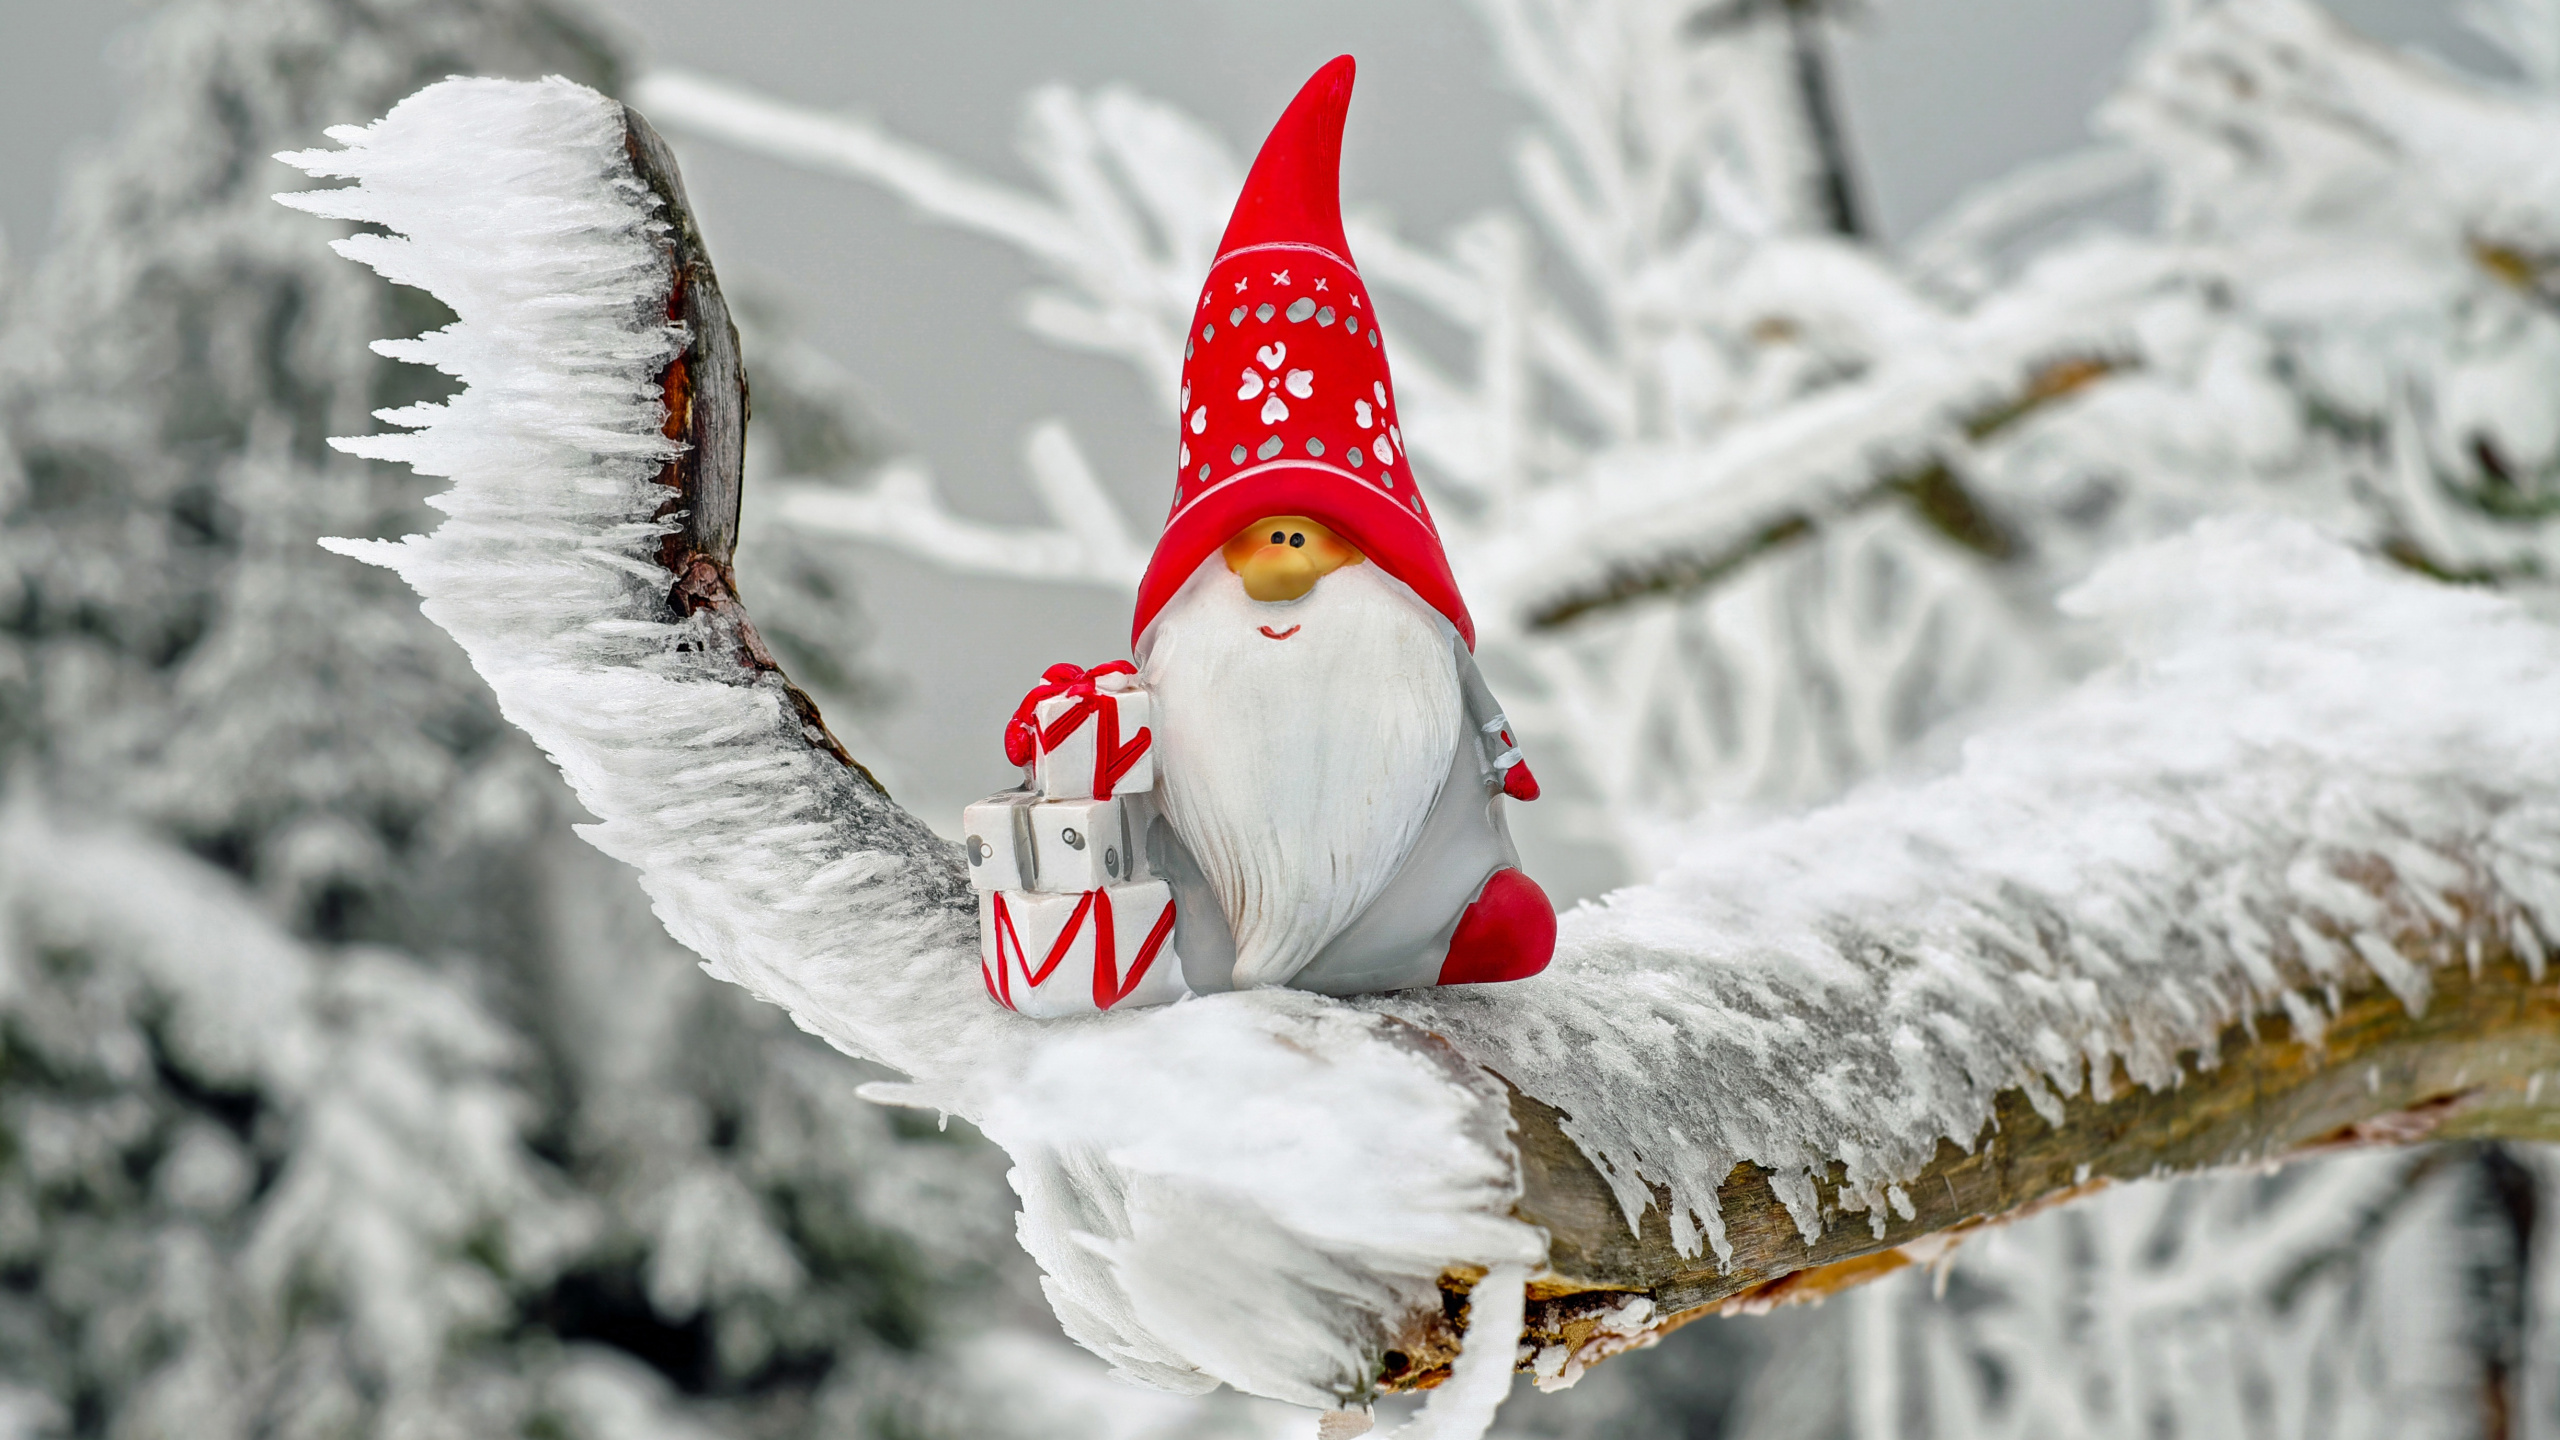 Weihnachtsmann, Weihnachten, Winter, Schnee, Einfrieren. Wallpaper in 2560x1440 Resolution